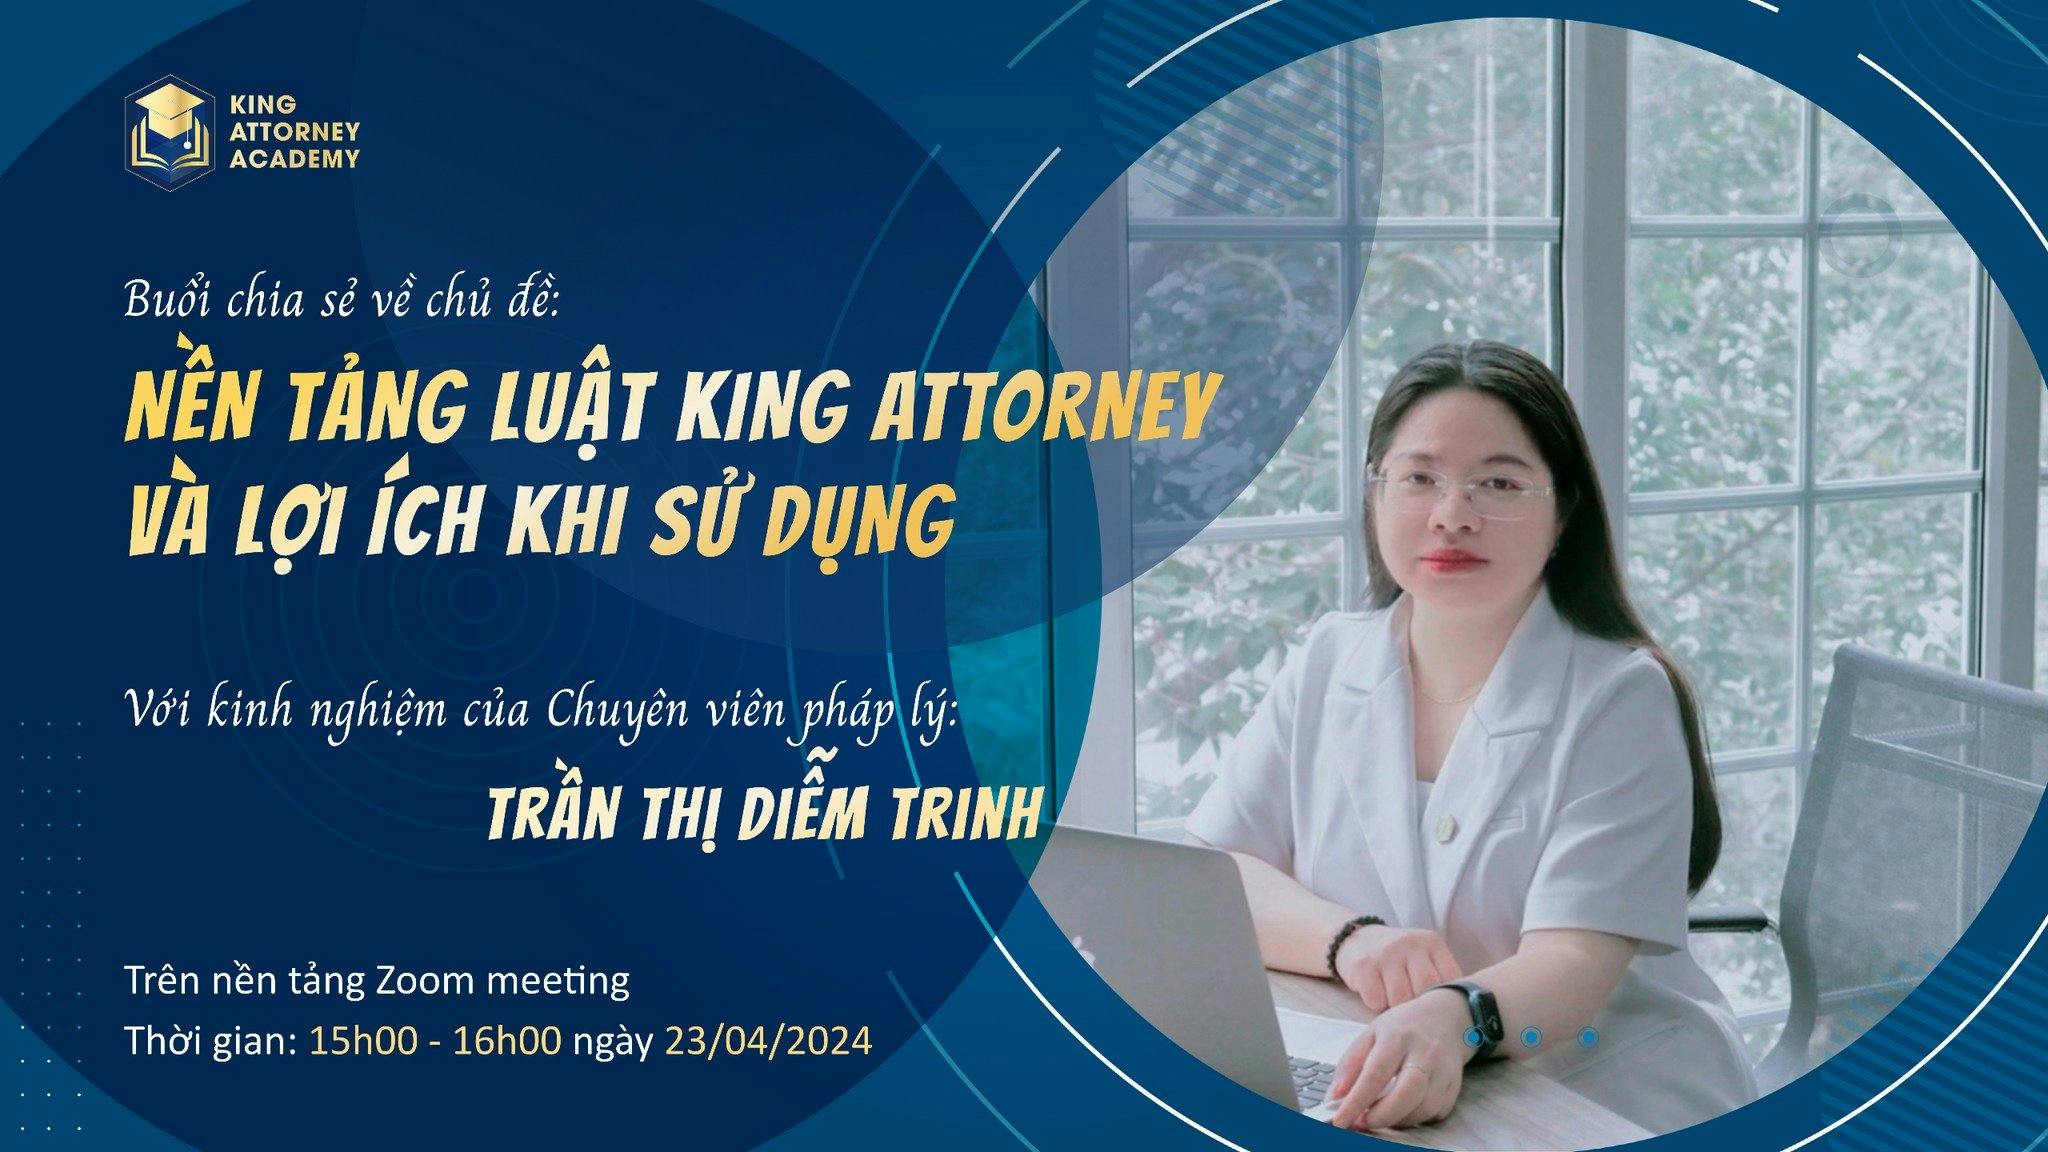 King Attorney Academy tổ chức đào tạo MBTAG về chủ đề: “"Nền tảng luật King Attorney và Lợi ích khi Sử dụng"